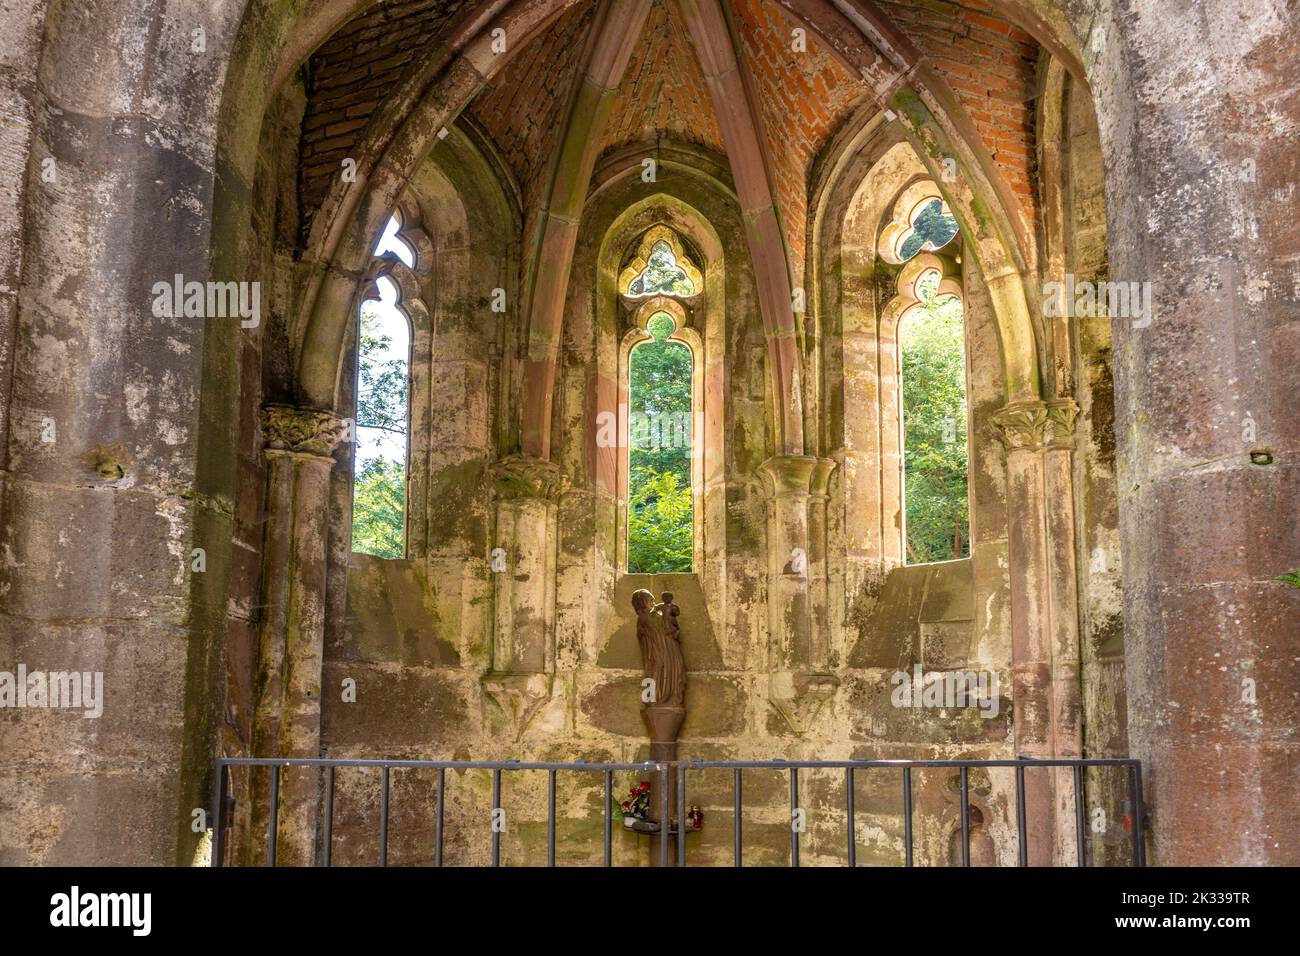 Die Ruine des Klosters Allerheiligen bei Oppenau, Schwarzwald, Baden-Württemberg, Deutschland |   Ruins of All Saints' Abbey Kloster Allerheiligen nea Stock Photo